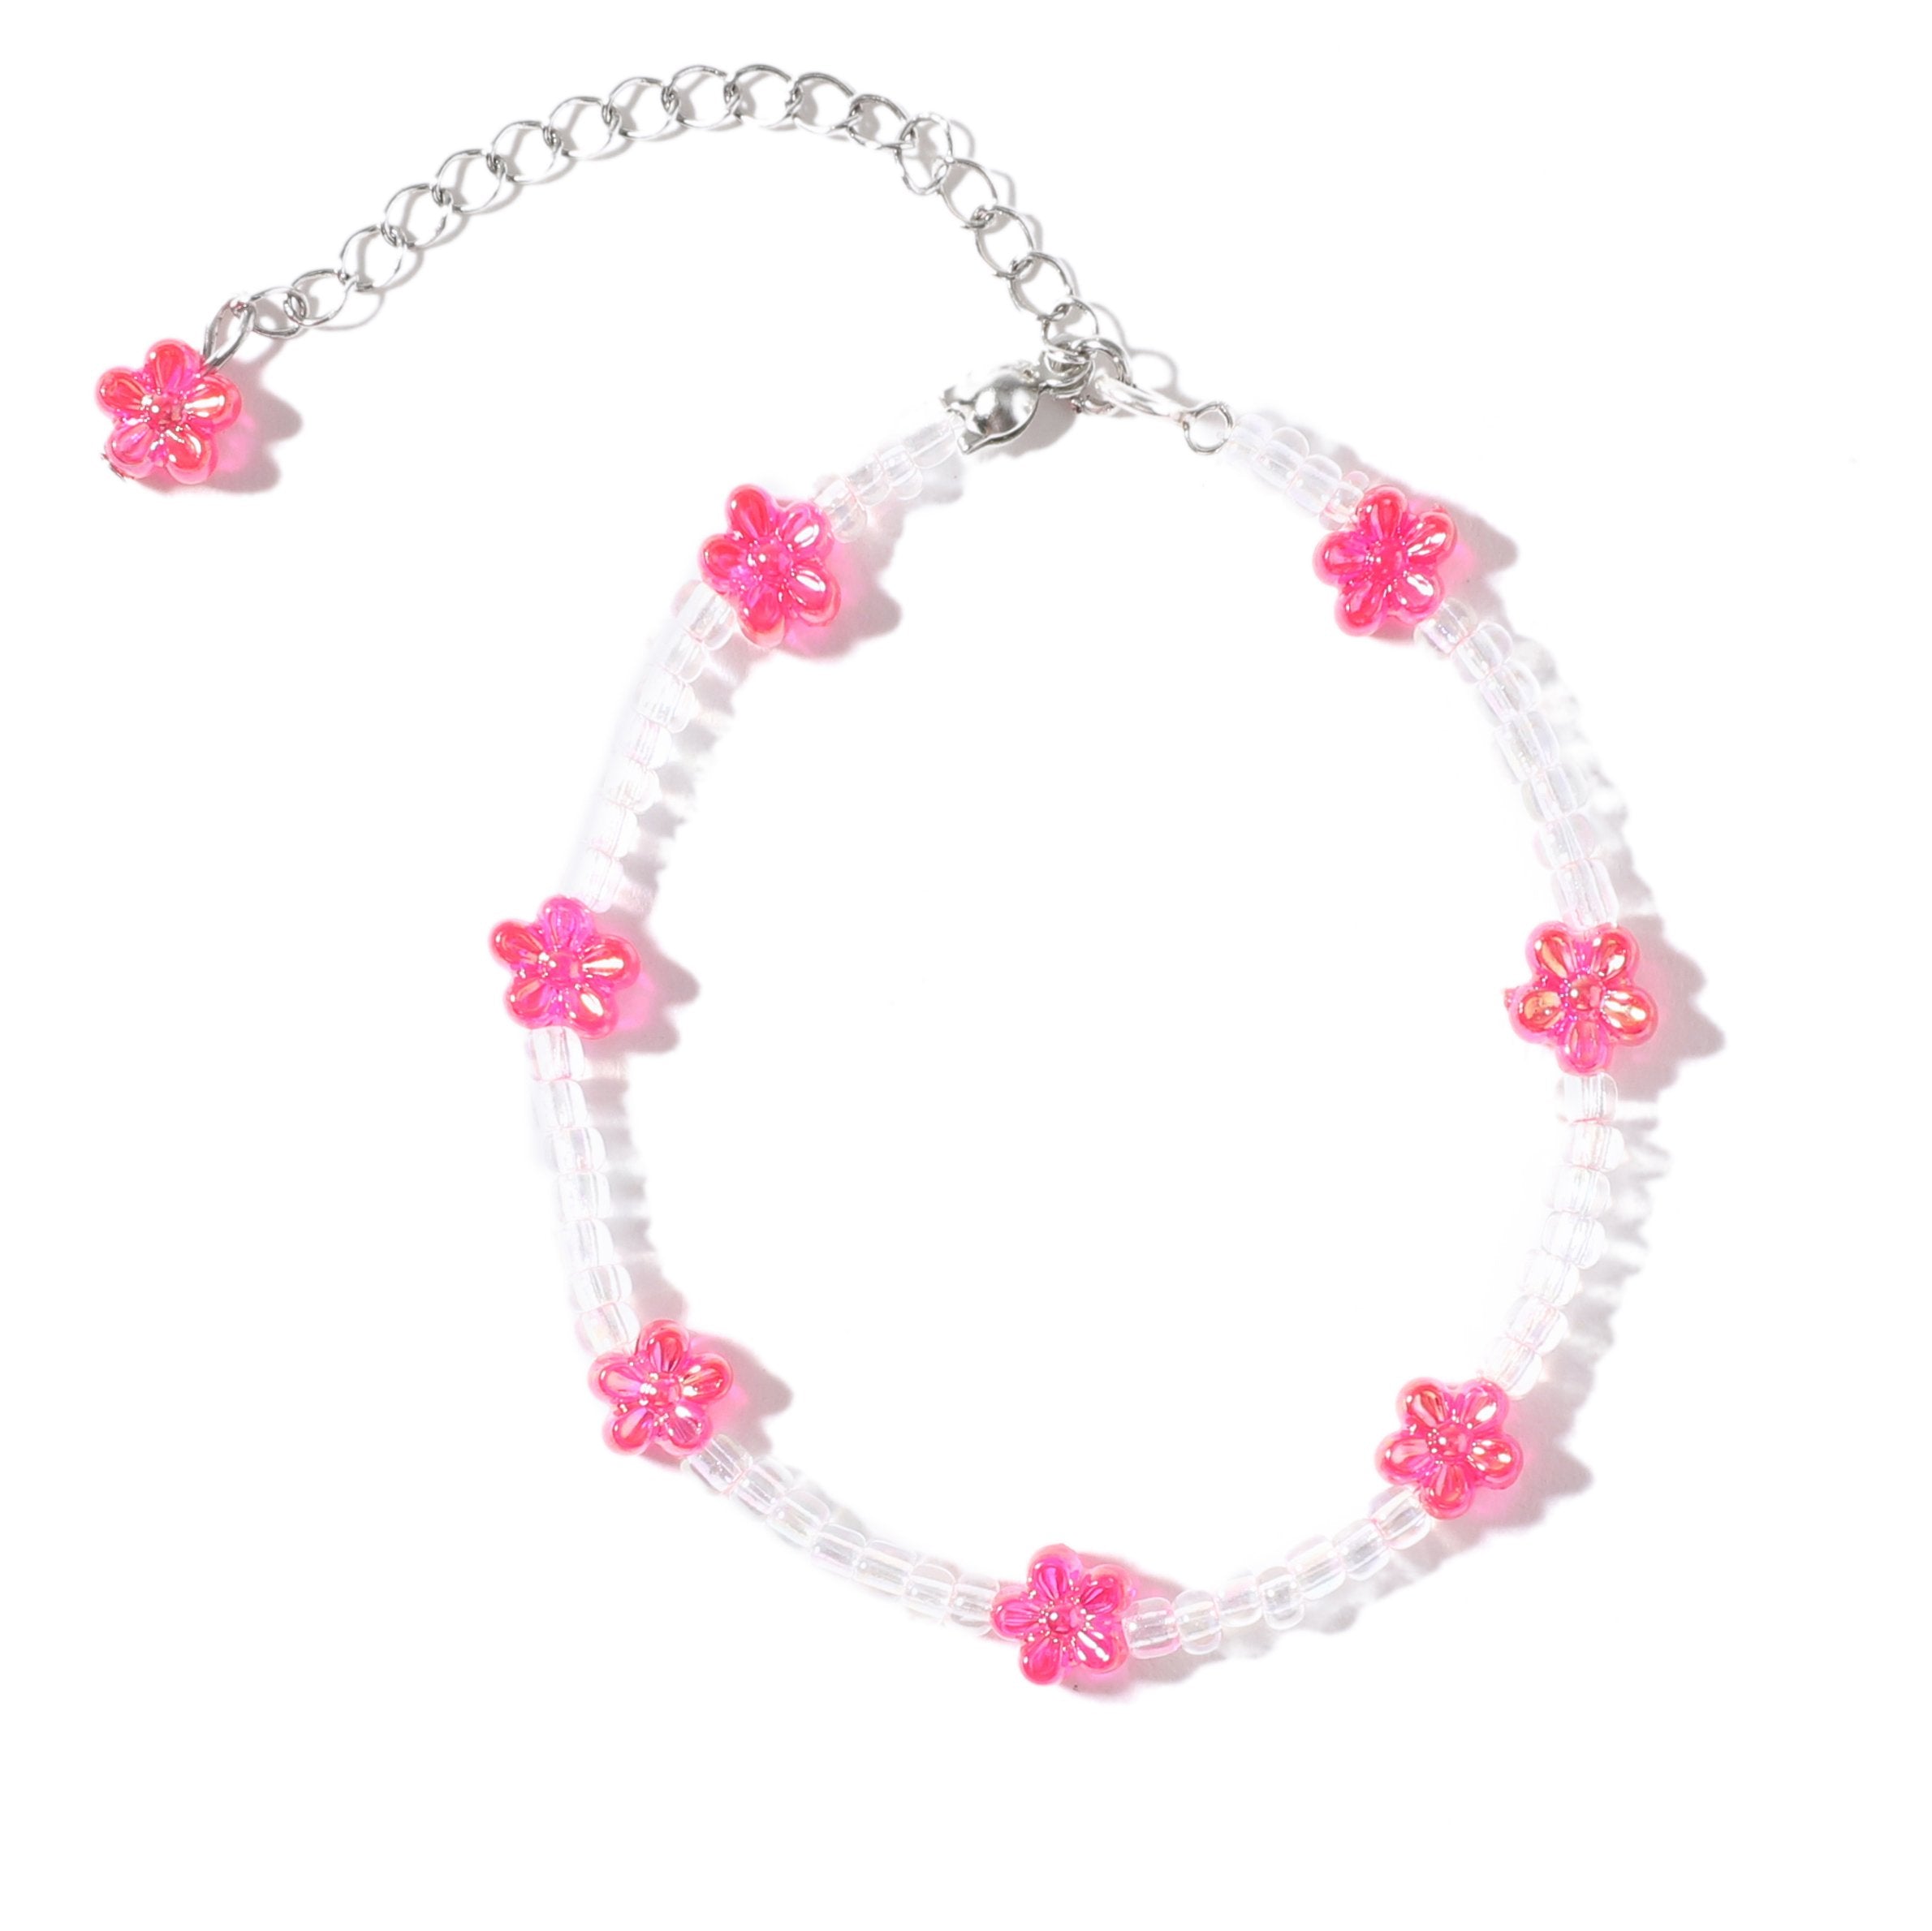 Penny Lane Bracelet in Cherry Blossom